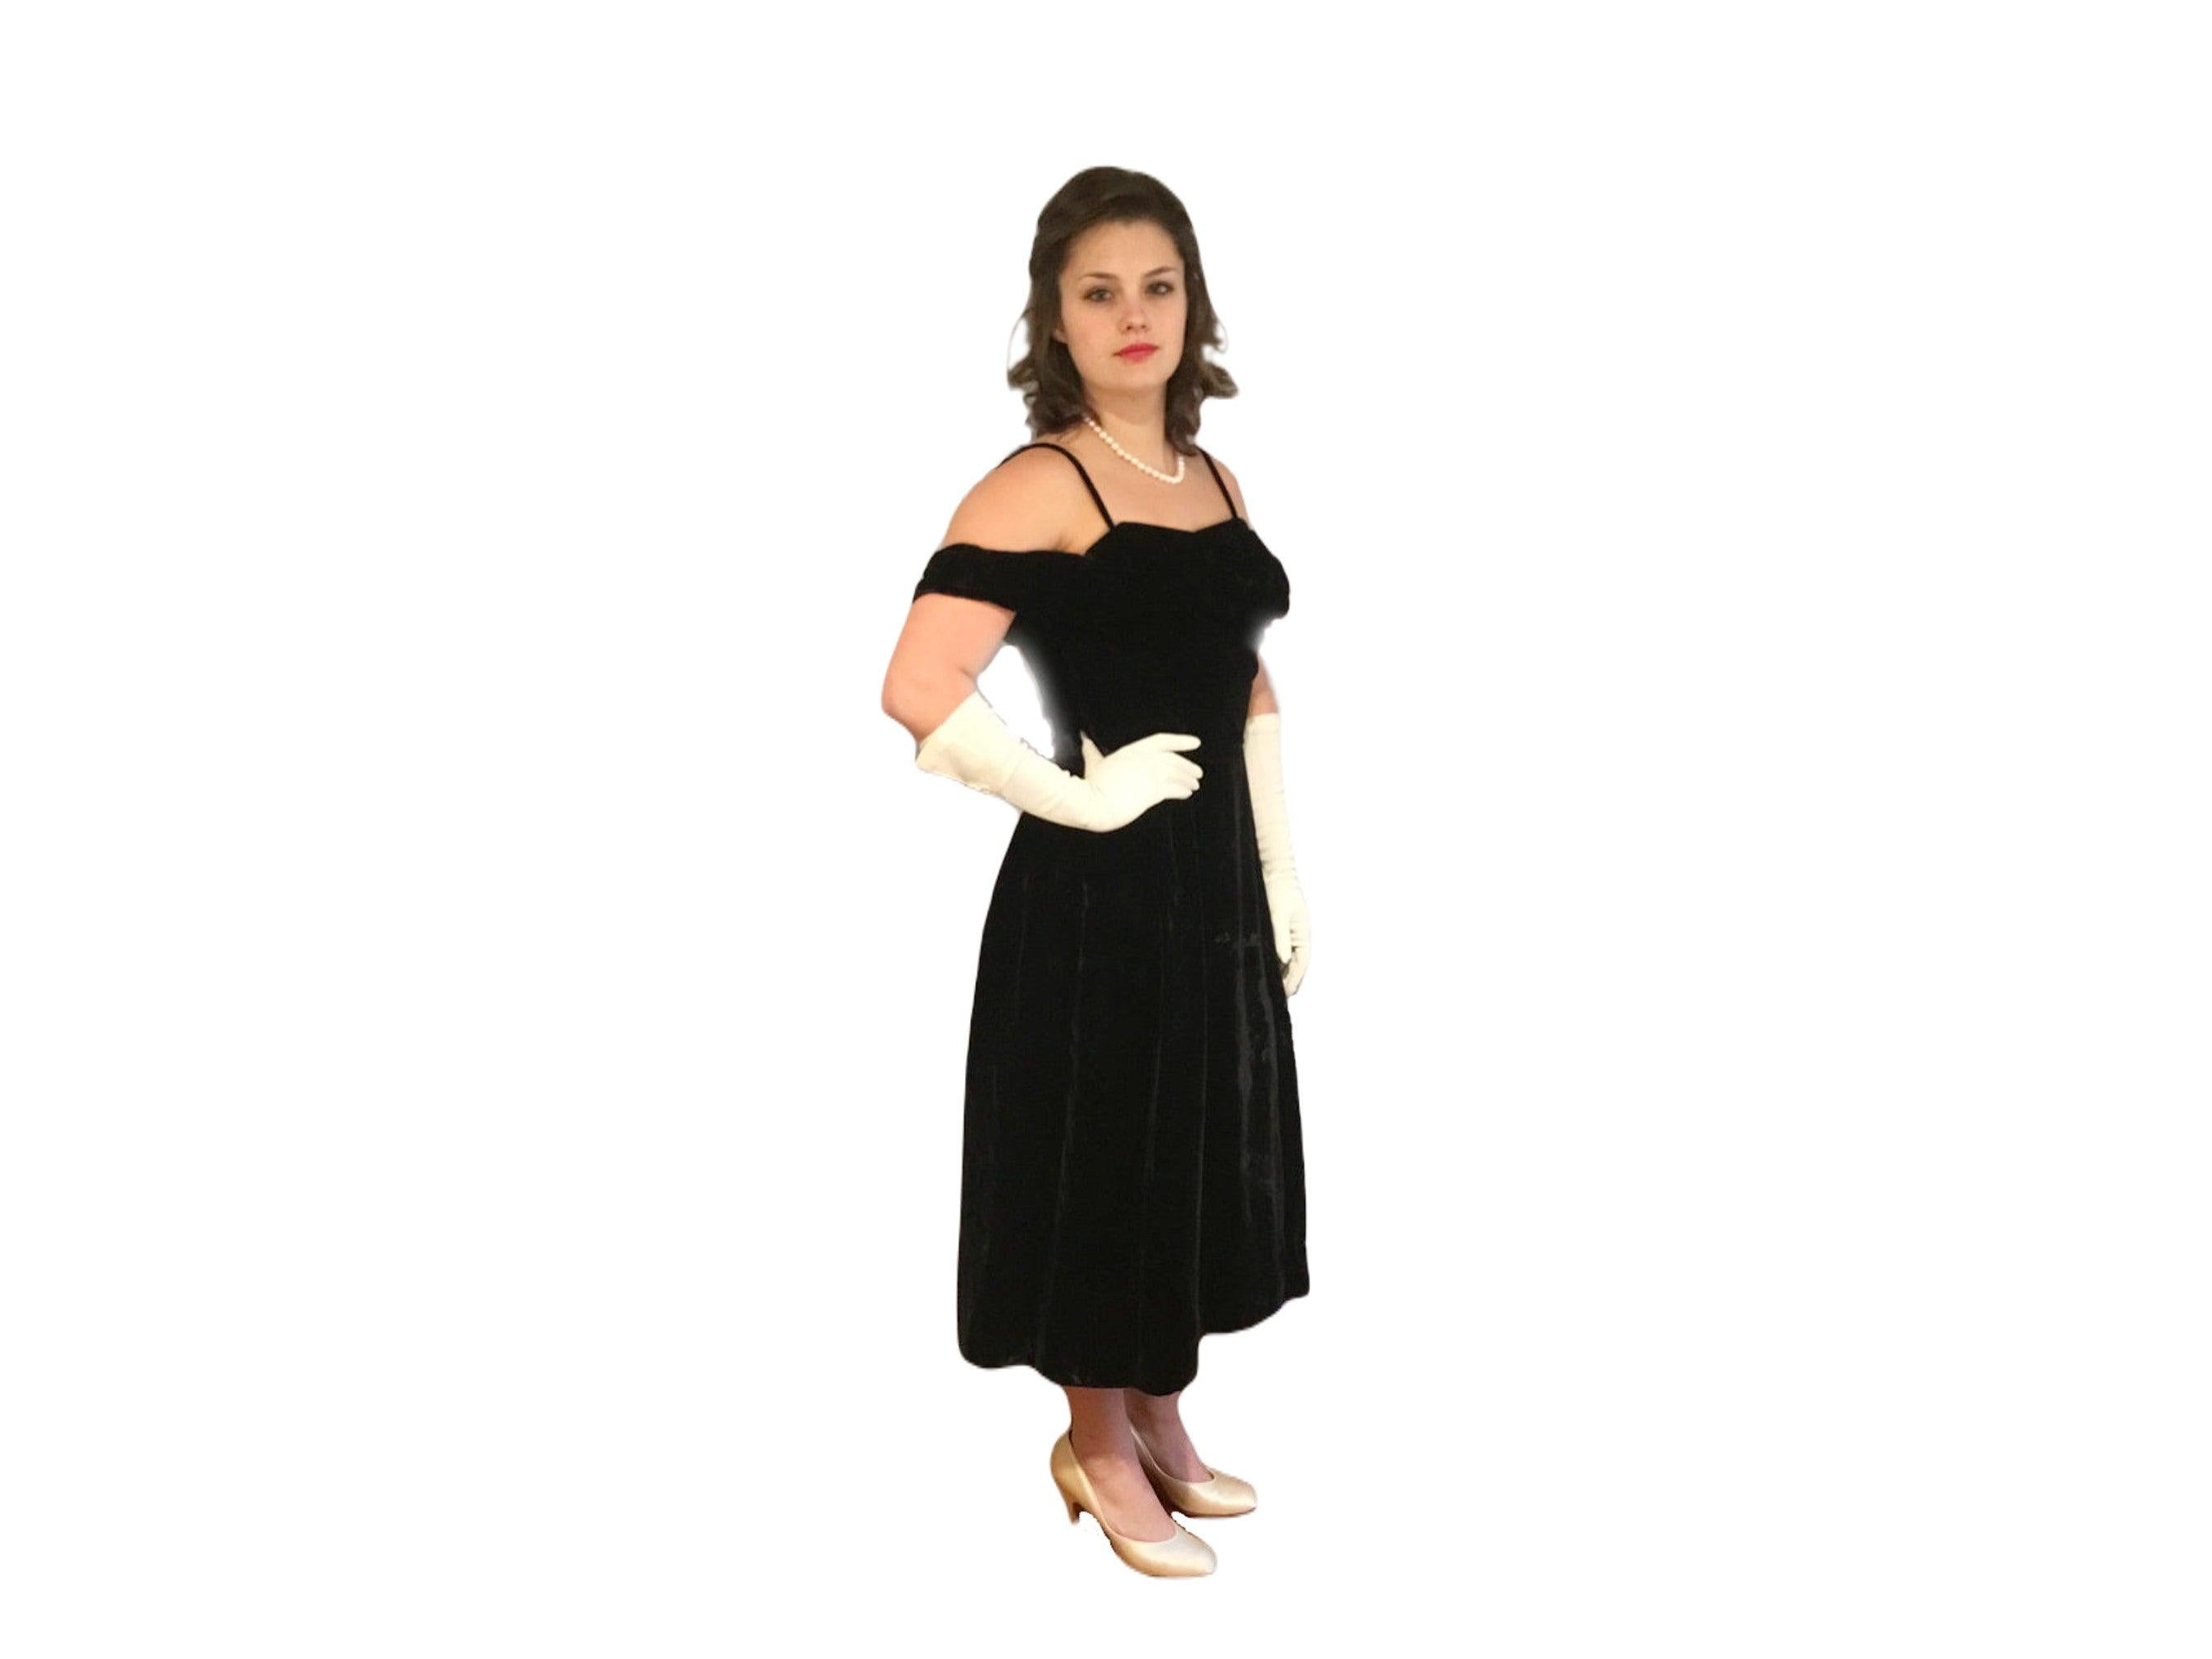 Magnifique robe Ceil Chapman en velours noir à épaules découvertes des années 1950 ! Ceil Chapman était l'une des créatrices préférées de Marilyn Monroe (la dernière image représente Marilyn vêtue d'un Ceil Chapman noir à épaules découvertes sur une